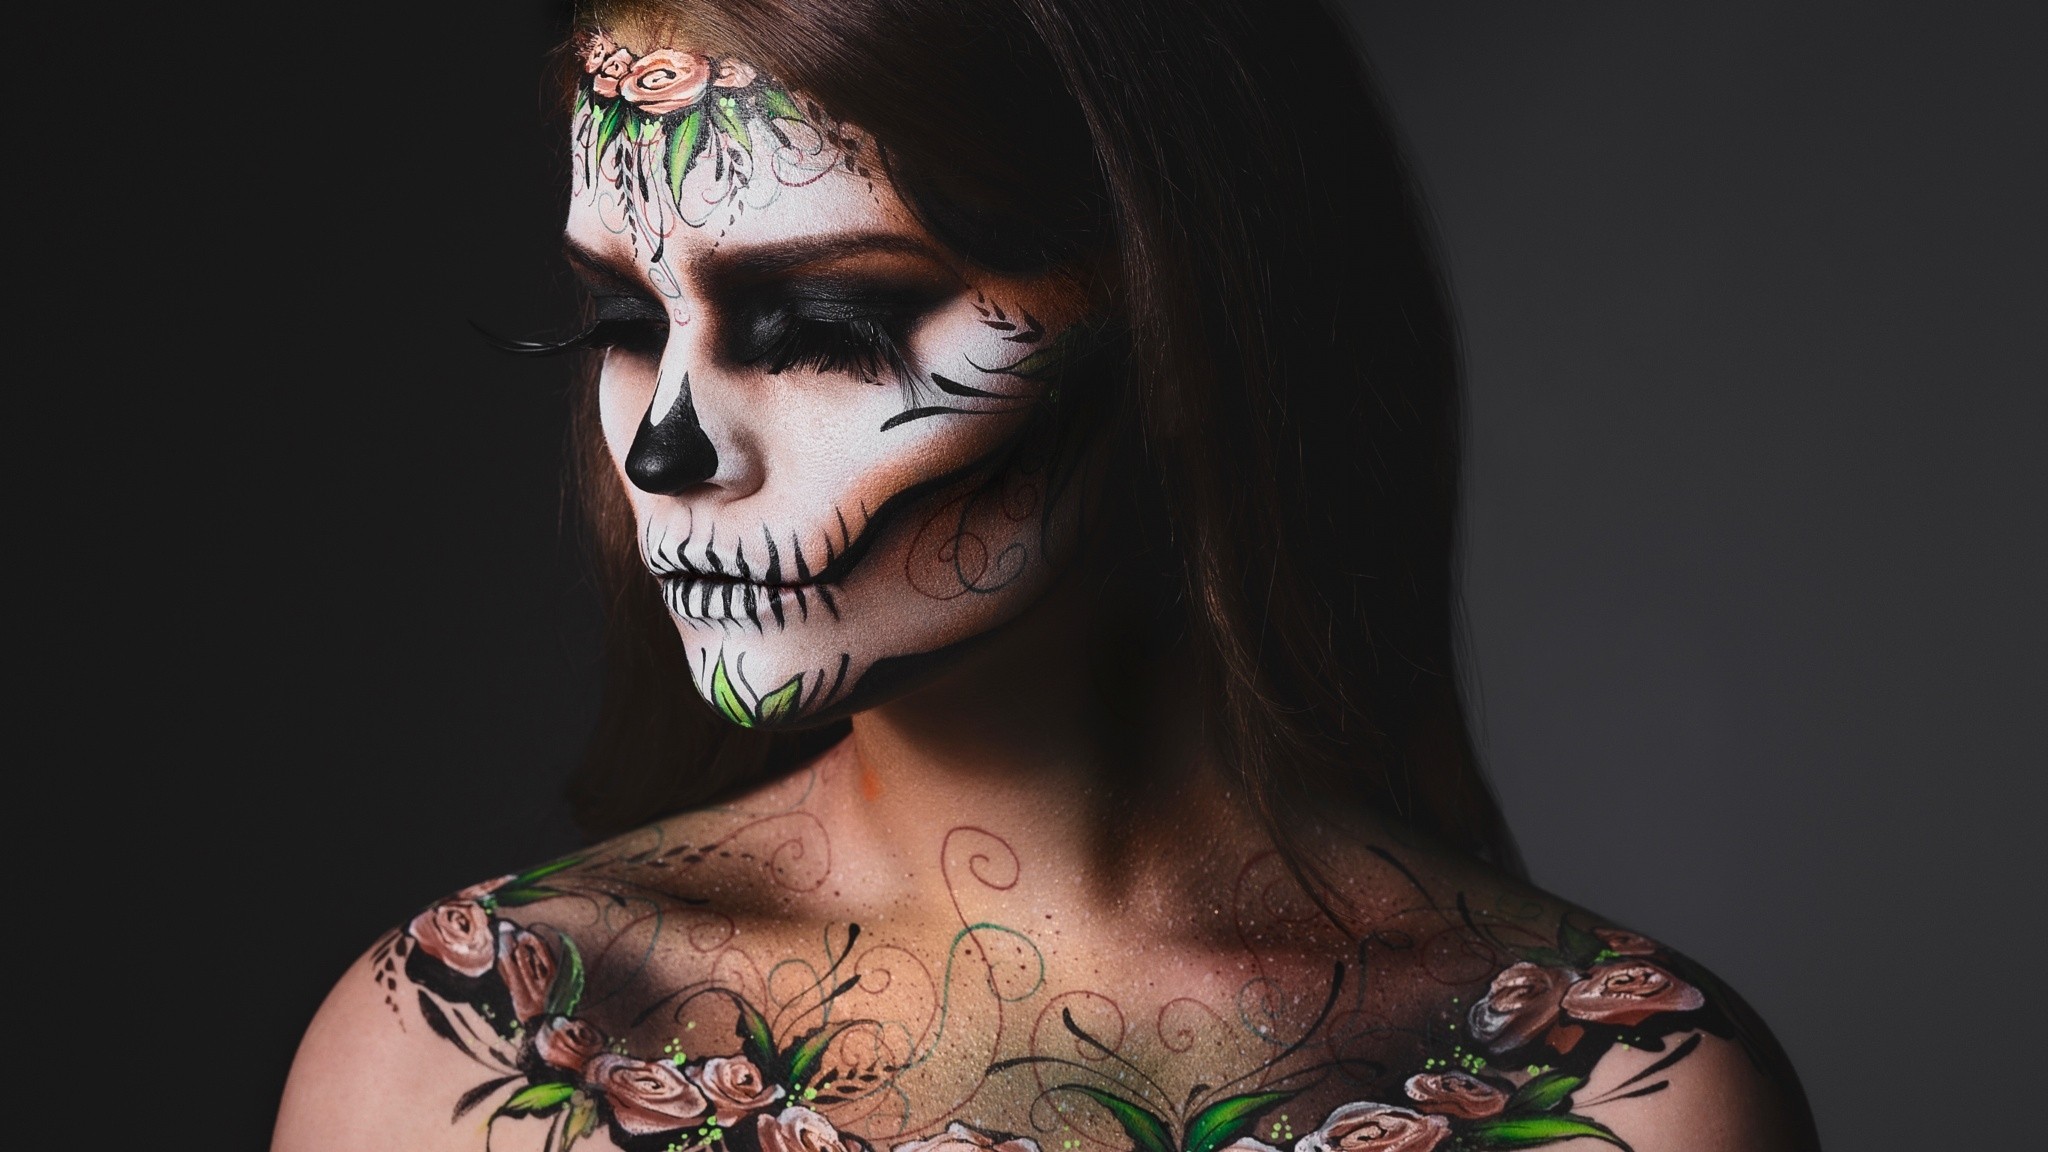 People 2048x1152 women makeup simple background portrait face body paint Dia de los Muertos